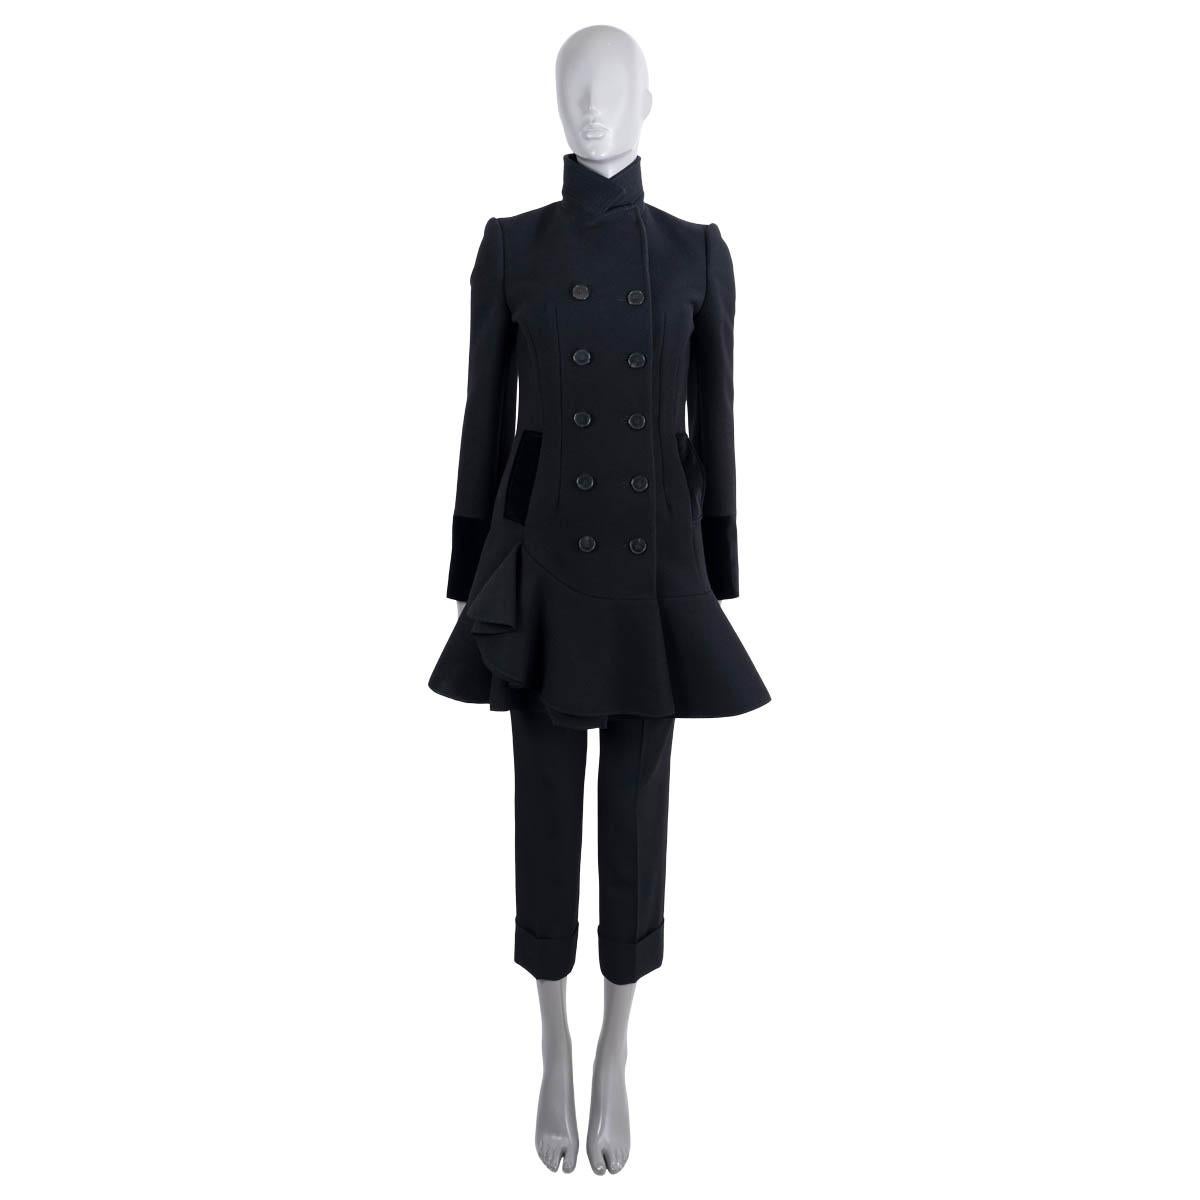 Manteau à double boutonnage en laine noire (100%) authentique à 100% Alexander McQueen. Il présente une silhouette ajustée, une encolure haute, un ourlet volanté et deux poches à rabat à la taille. Les rabats des poches et les poignets sont en coton